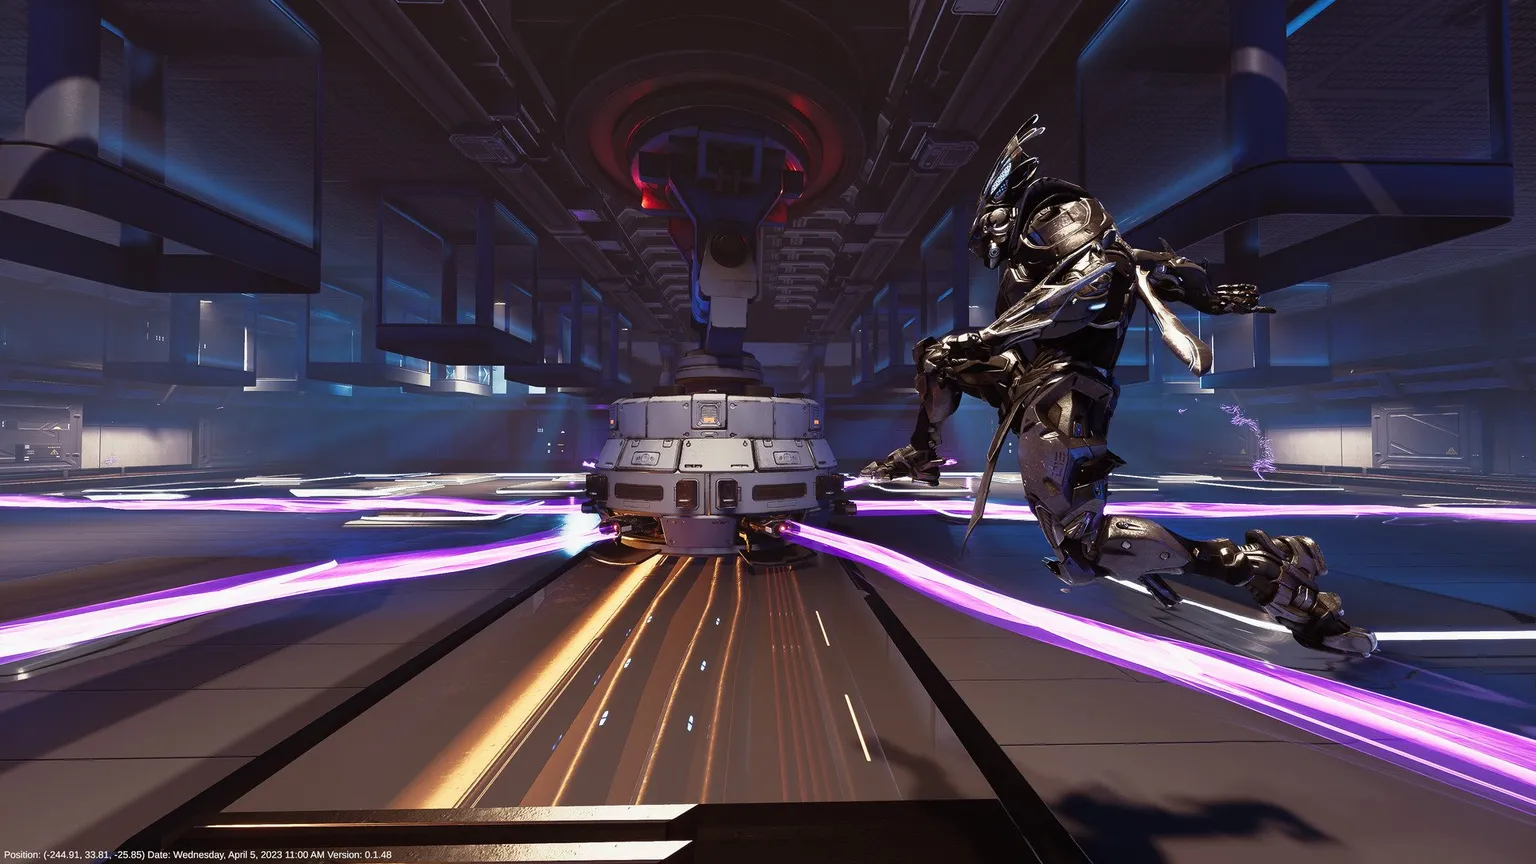 Capture d'écran de Proving Grounds montrant Reyu sautant par-dessus des lasers violets dans un environnement d'entrepôt scifi dystopique.